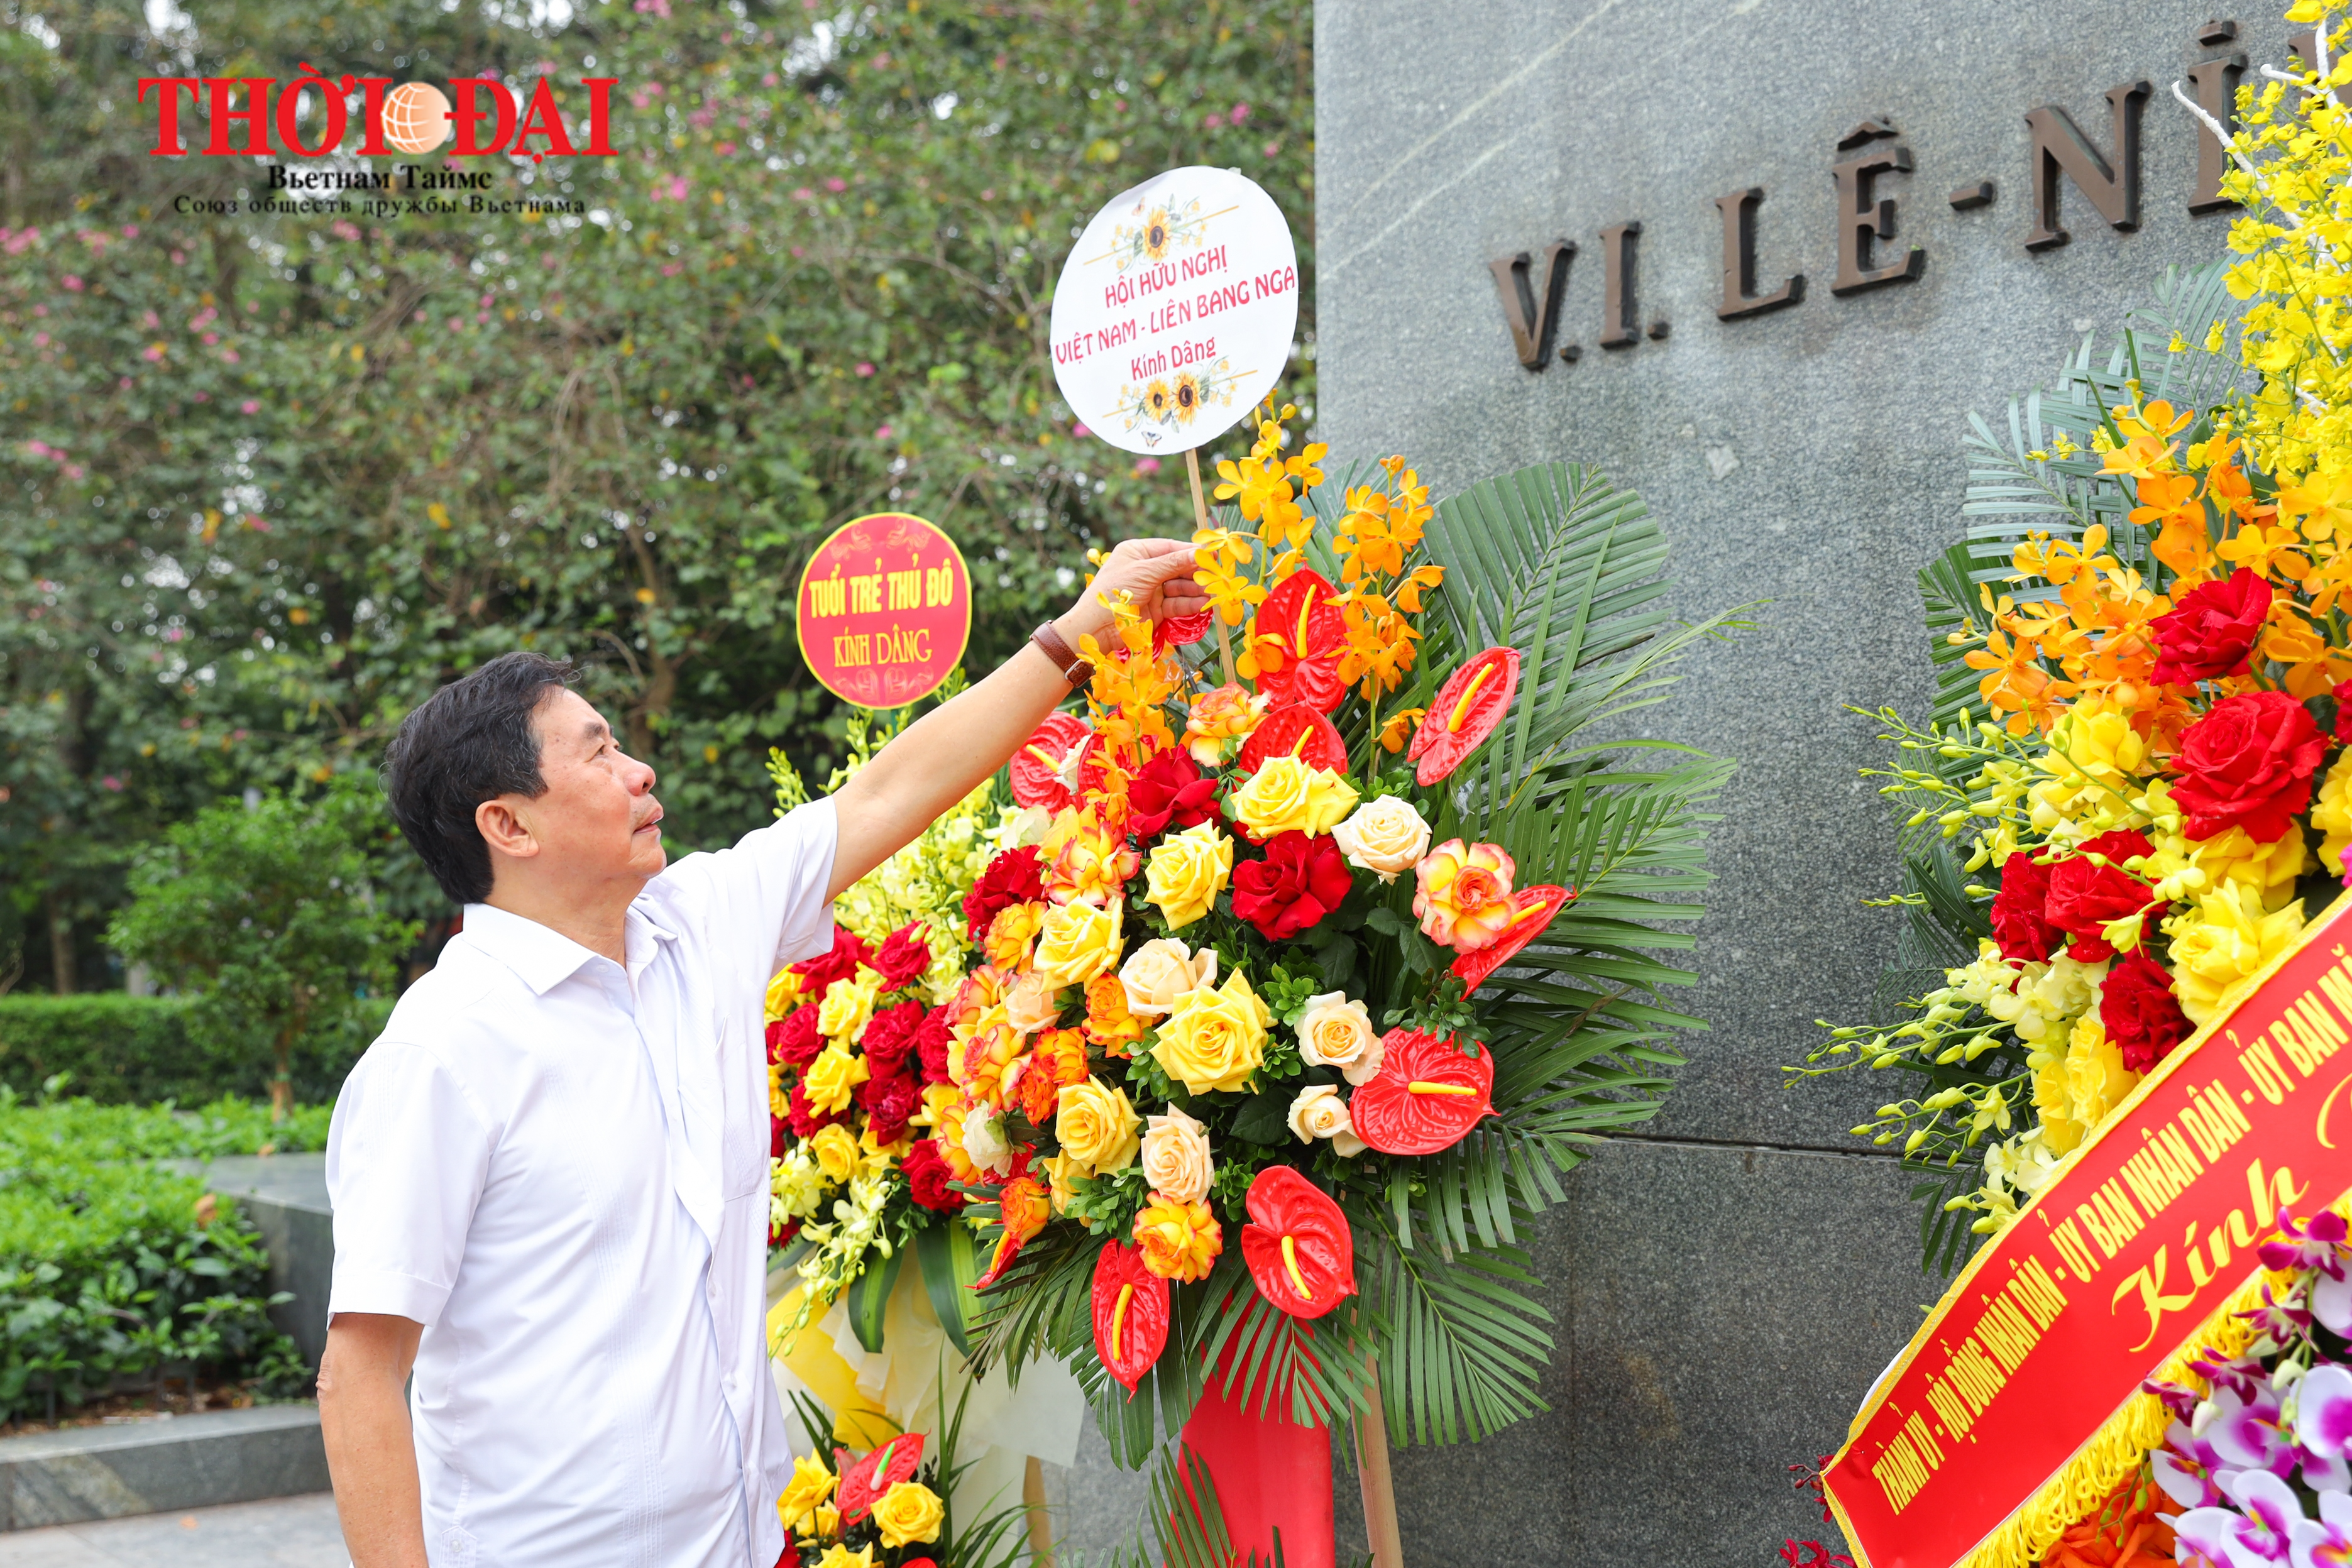 ОВРД возложило цветы к памятнику В.И. Ленину и почтили его память по случаю 154-летия со дня рождения